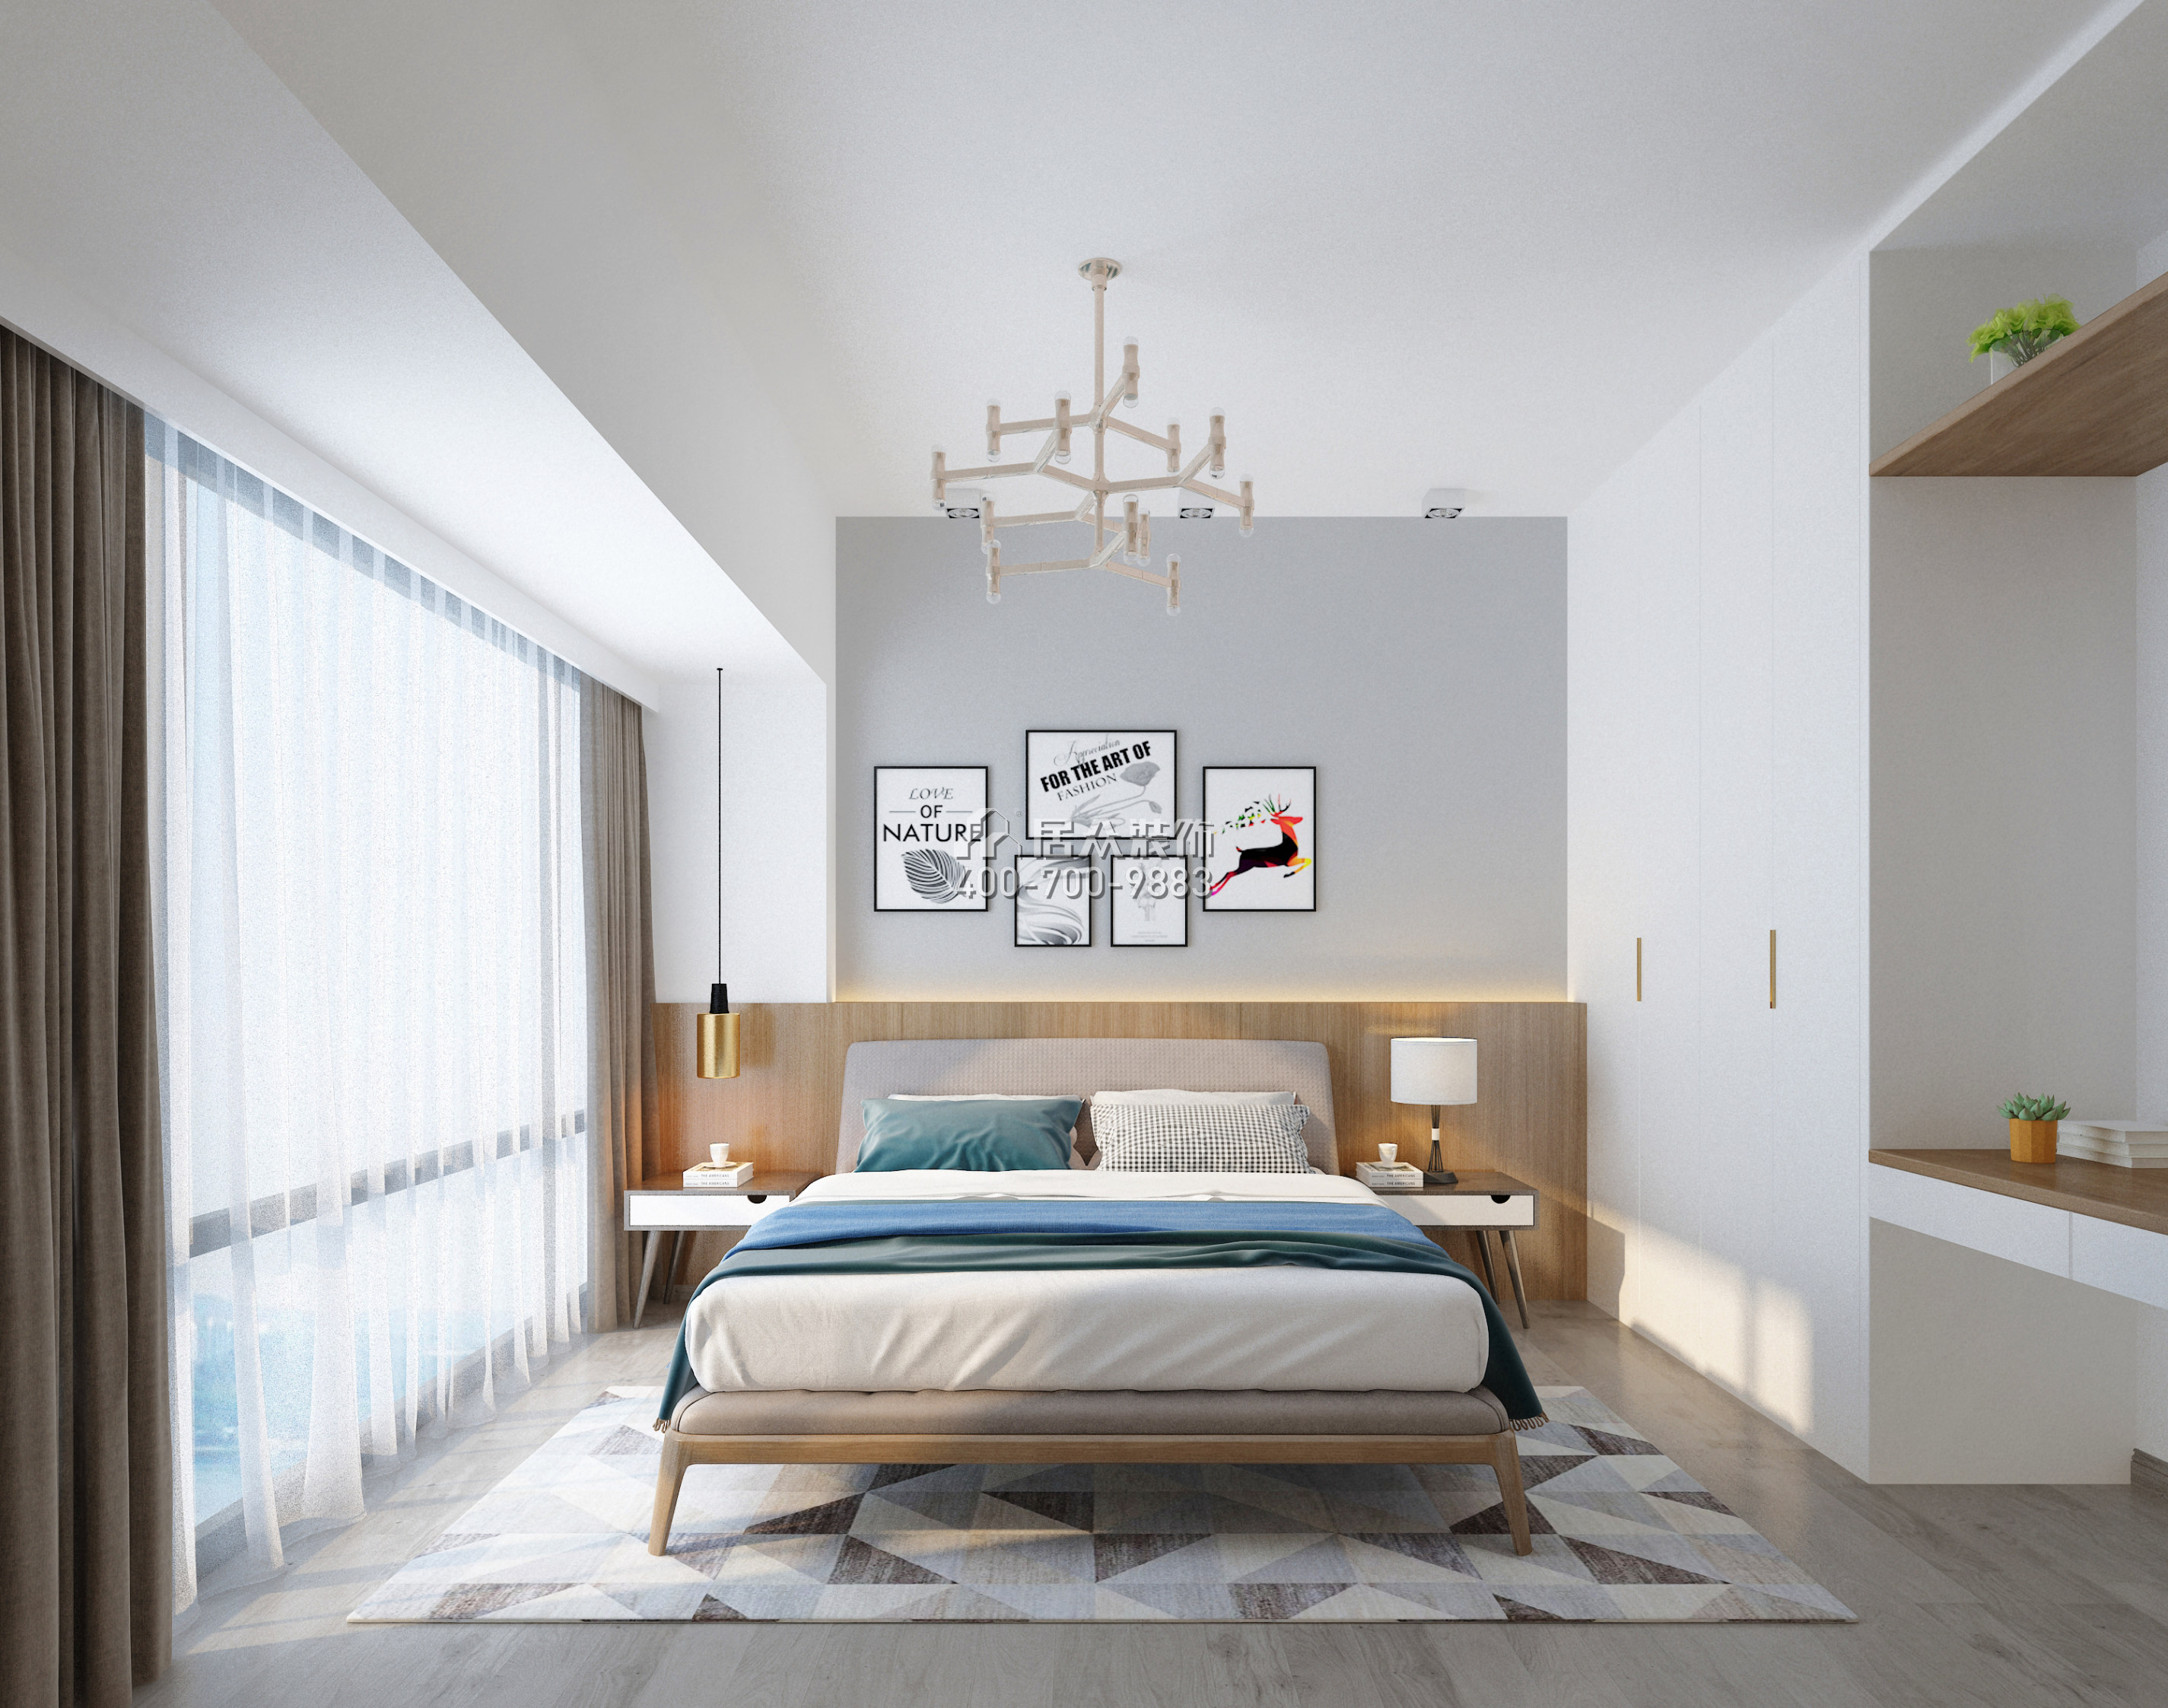 平吉上苑二期98平方米現代簡約風格平層戶型臥室裝修效果圖